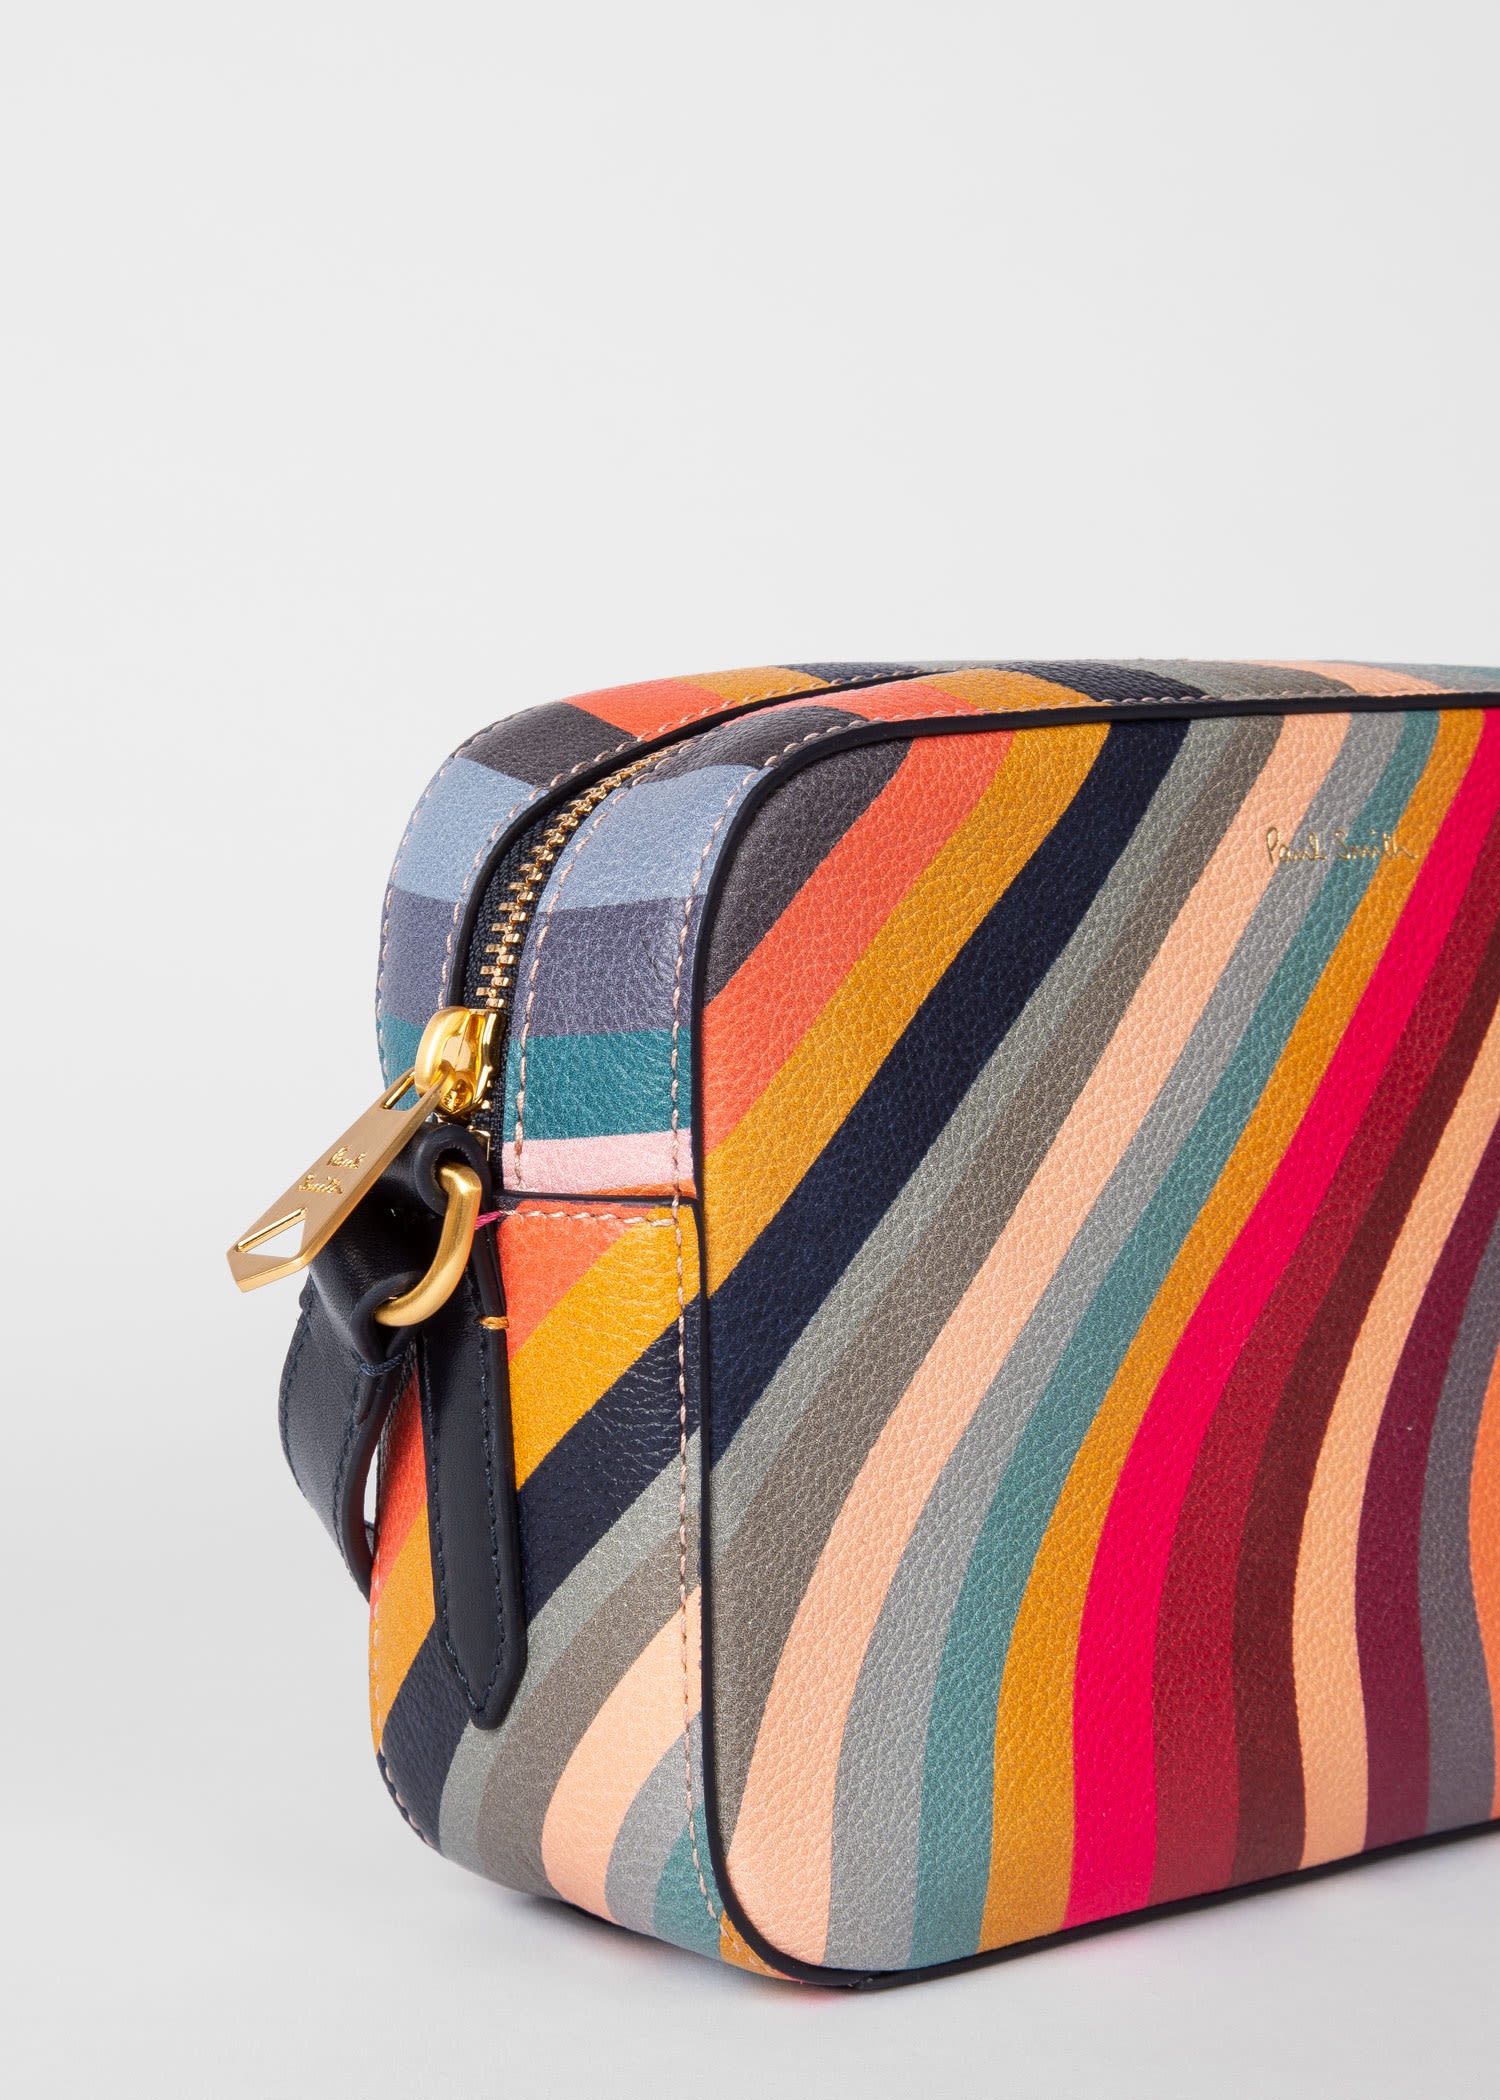 Paul Smith Women's Swirl Cross Body Bag - Multicolour - One Size